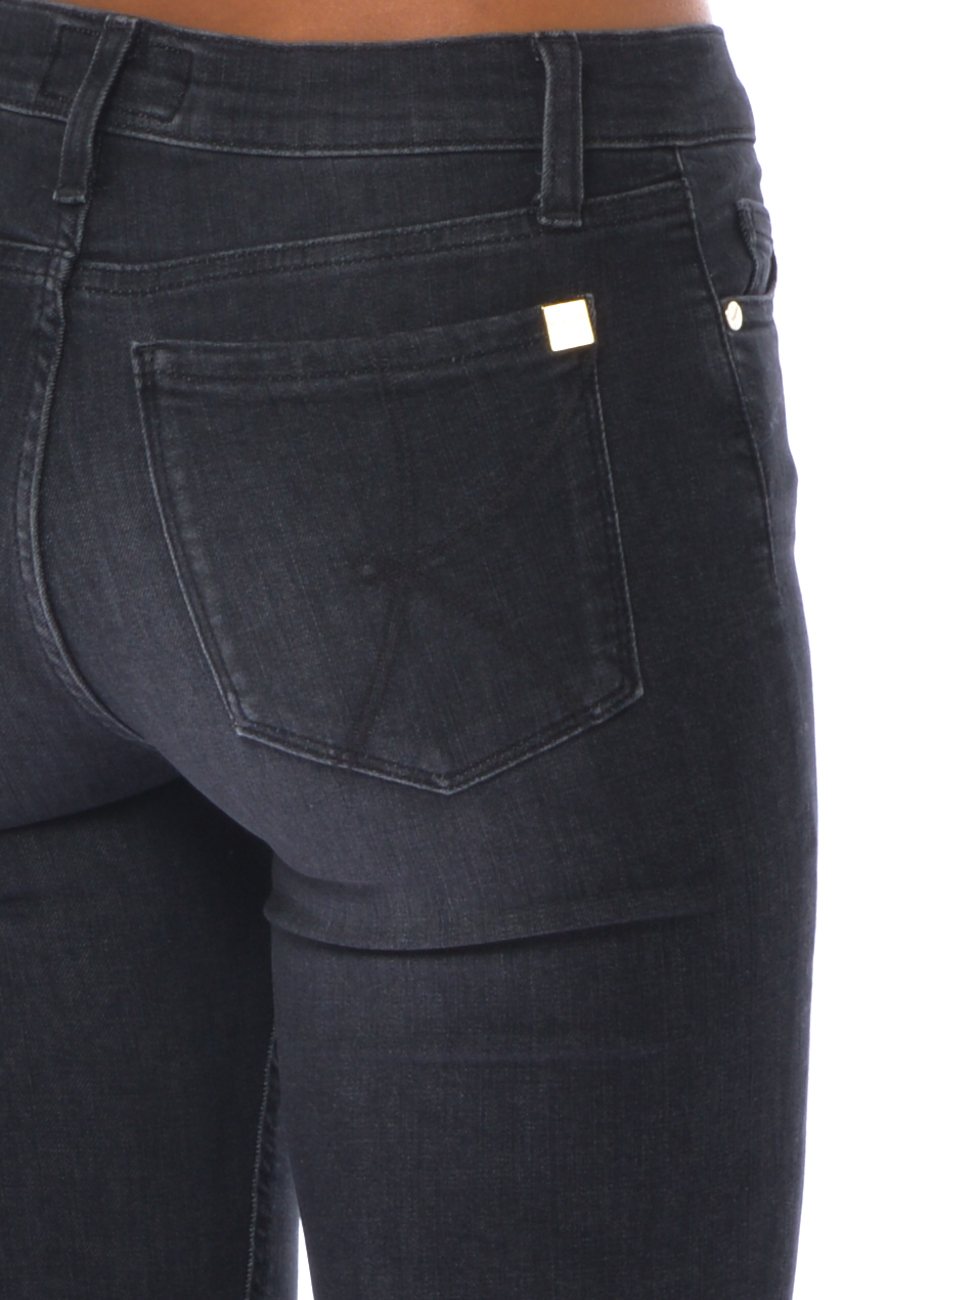 Jeans da donna Kaos cinque washed stone - tasche OI6BL002